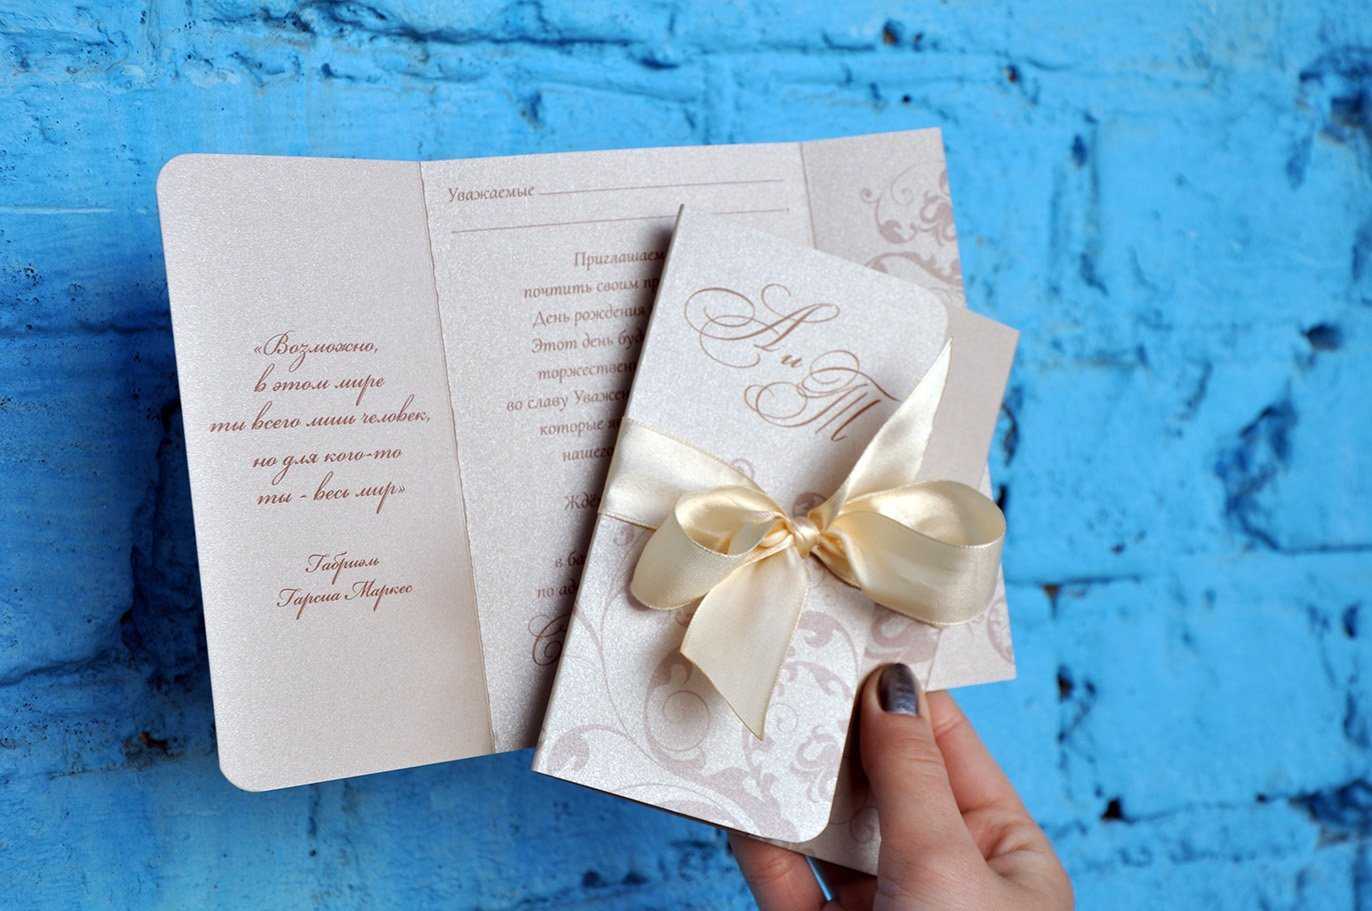 Как cделать оригинальные пригласительные открытки на свадьбу?